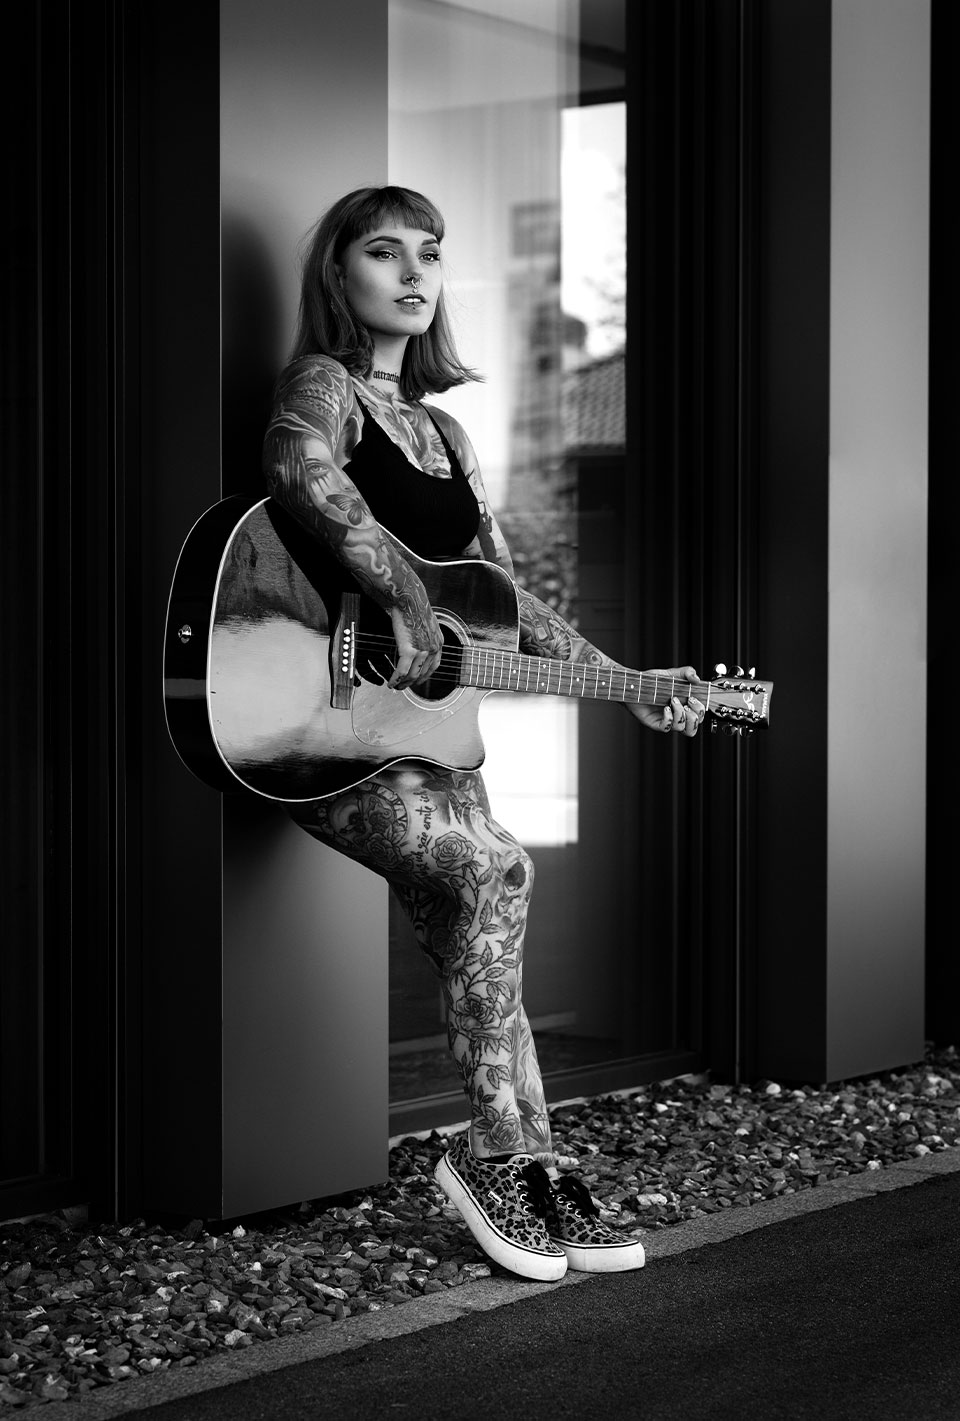 Frau mit Tattoos spielt Gitarre und lehnt an einer Wand.